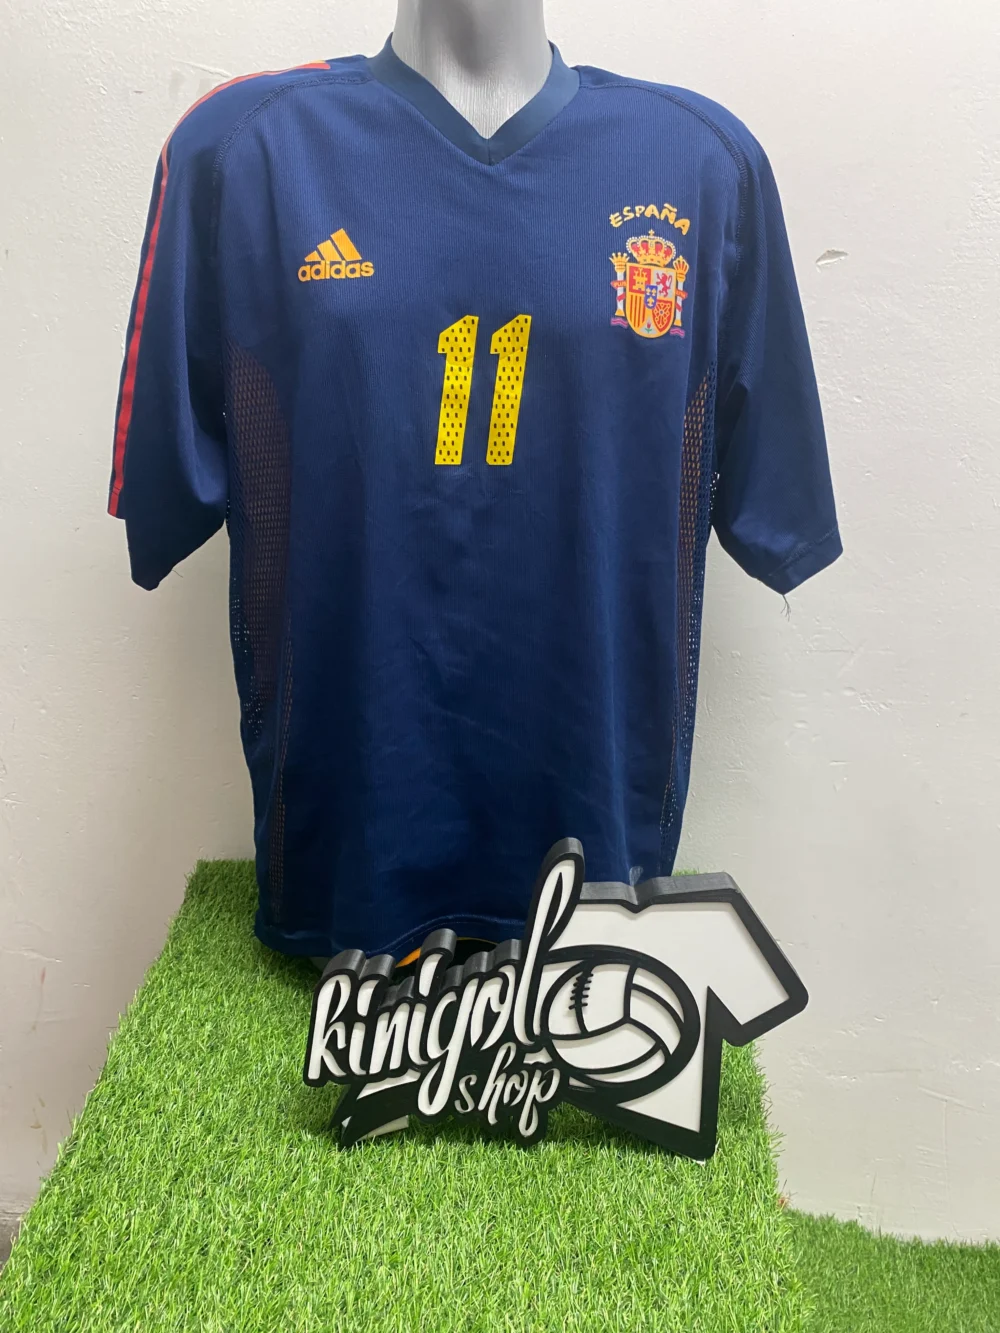 camiseta-seleccion-española-11-kinigolshop